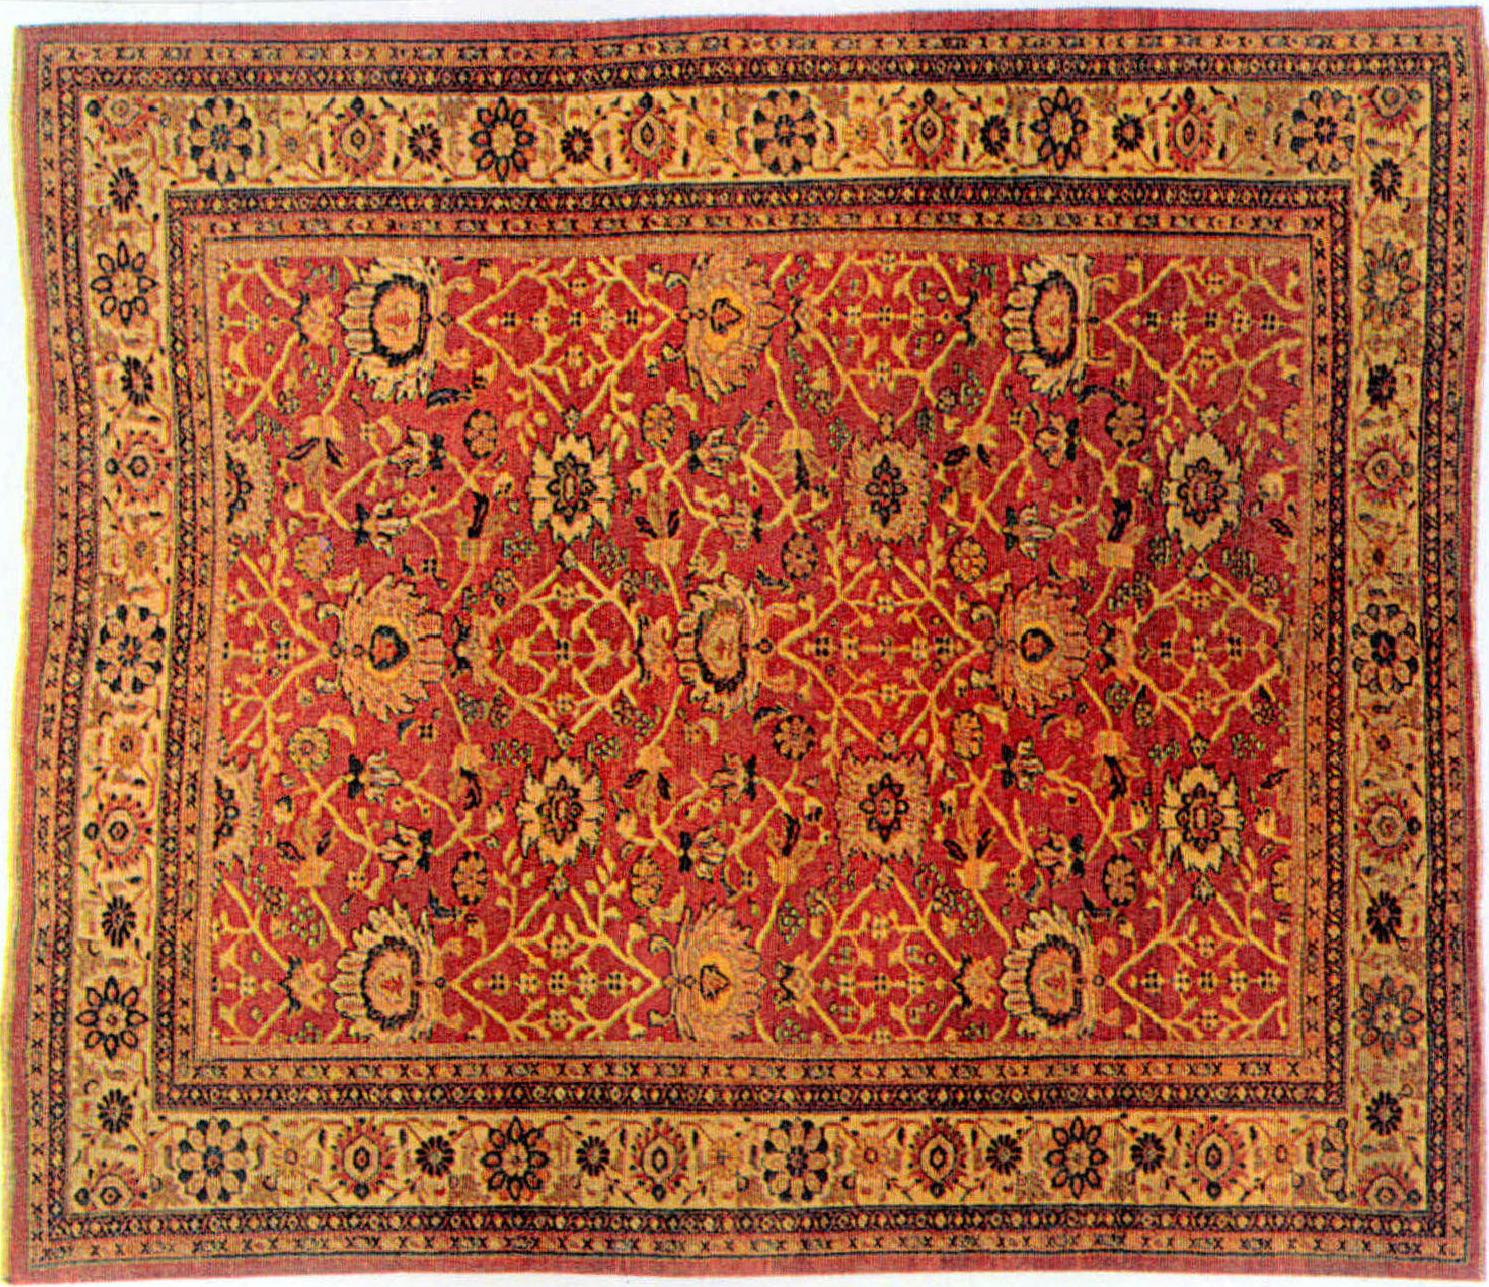 19世纪末伊朗为欧洲市场设计编织的地毯